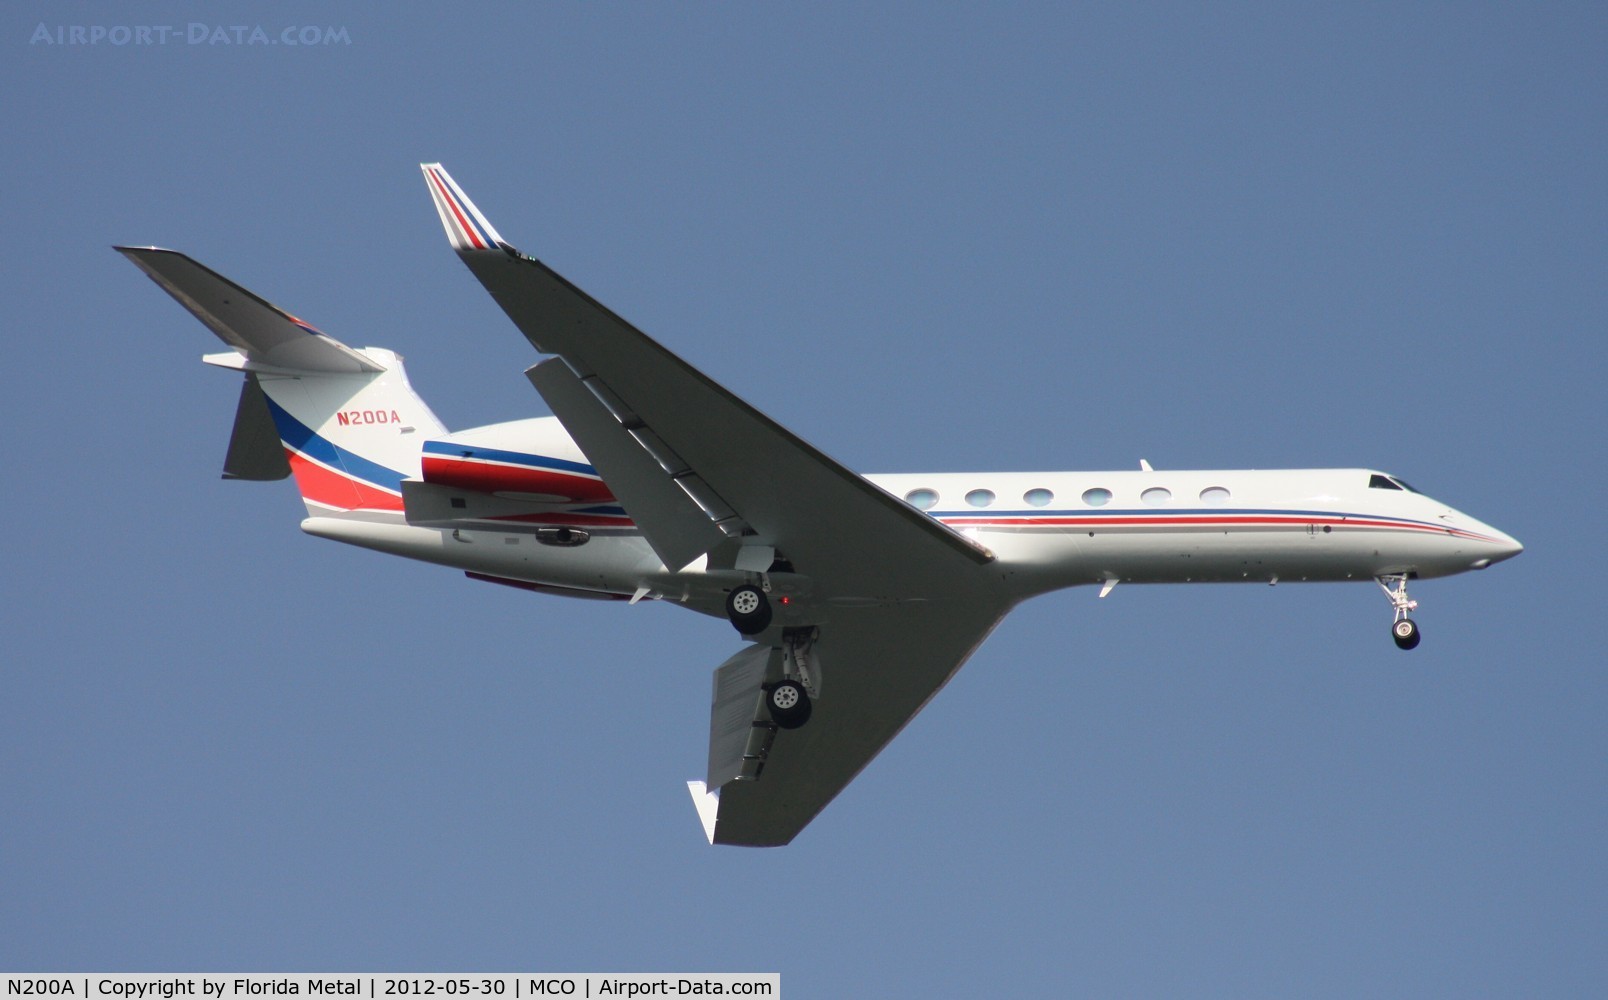 N200A, 2011 Gulfstream Aerospace GV-SP (G550) C/N 5341, Gulfstream 550